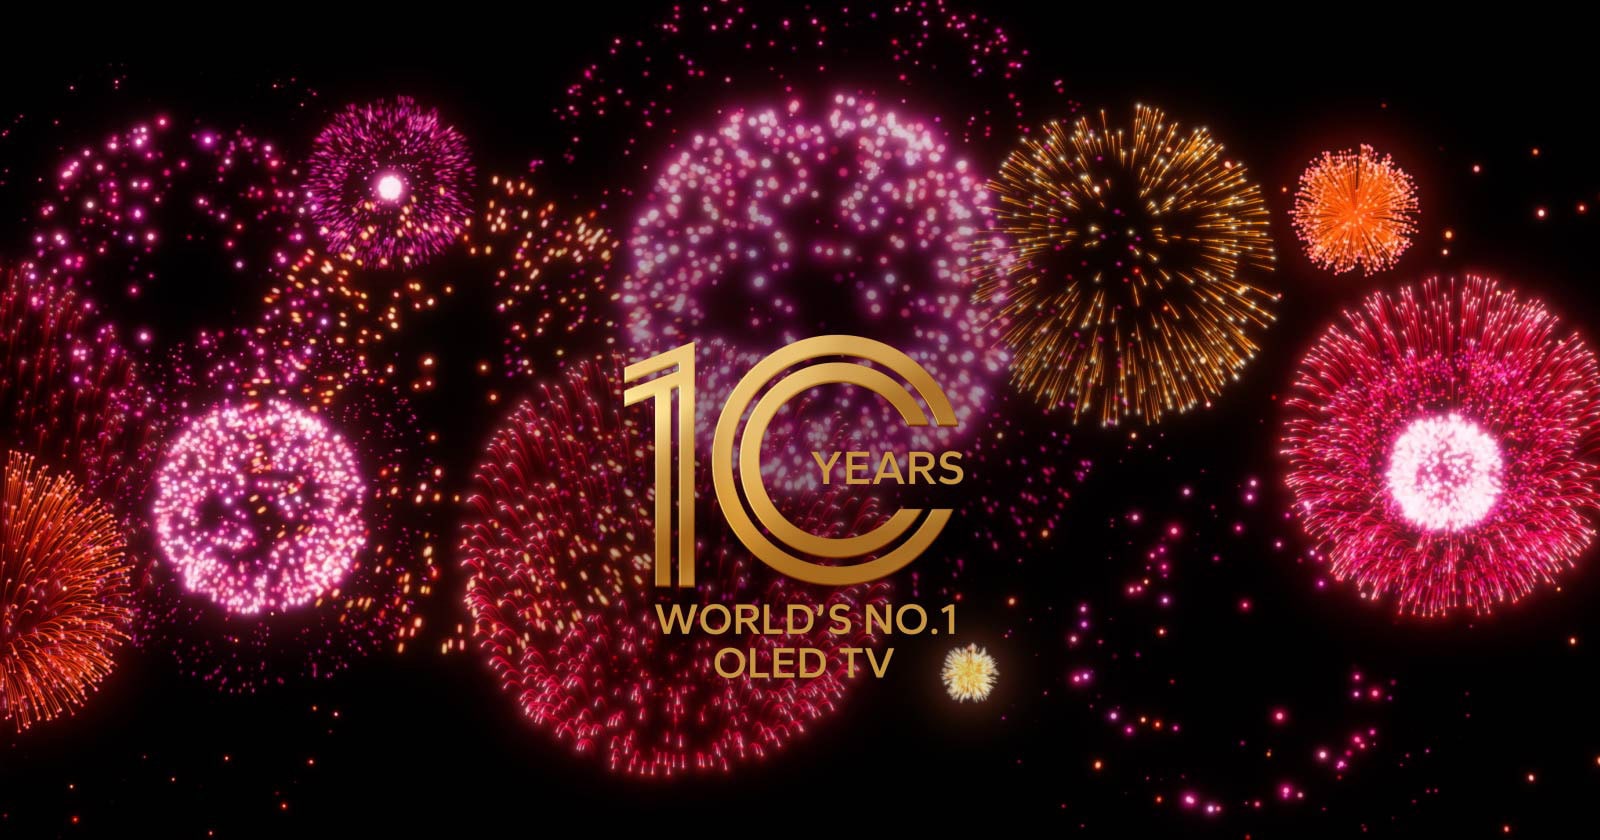 Videoposnetek prikazuje emblem OLED TV #1 na svetu že 10 let, ki se postopoma pojavlja na črnem ozadju z vijoličnim, roza in oranžnim ognjemetom.